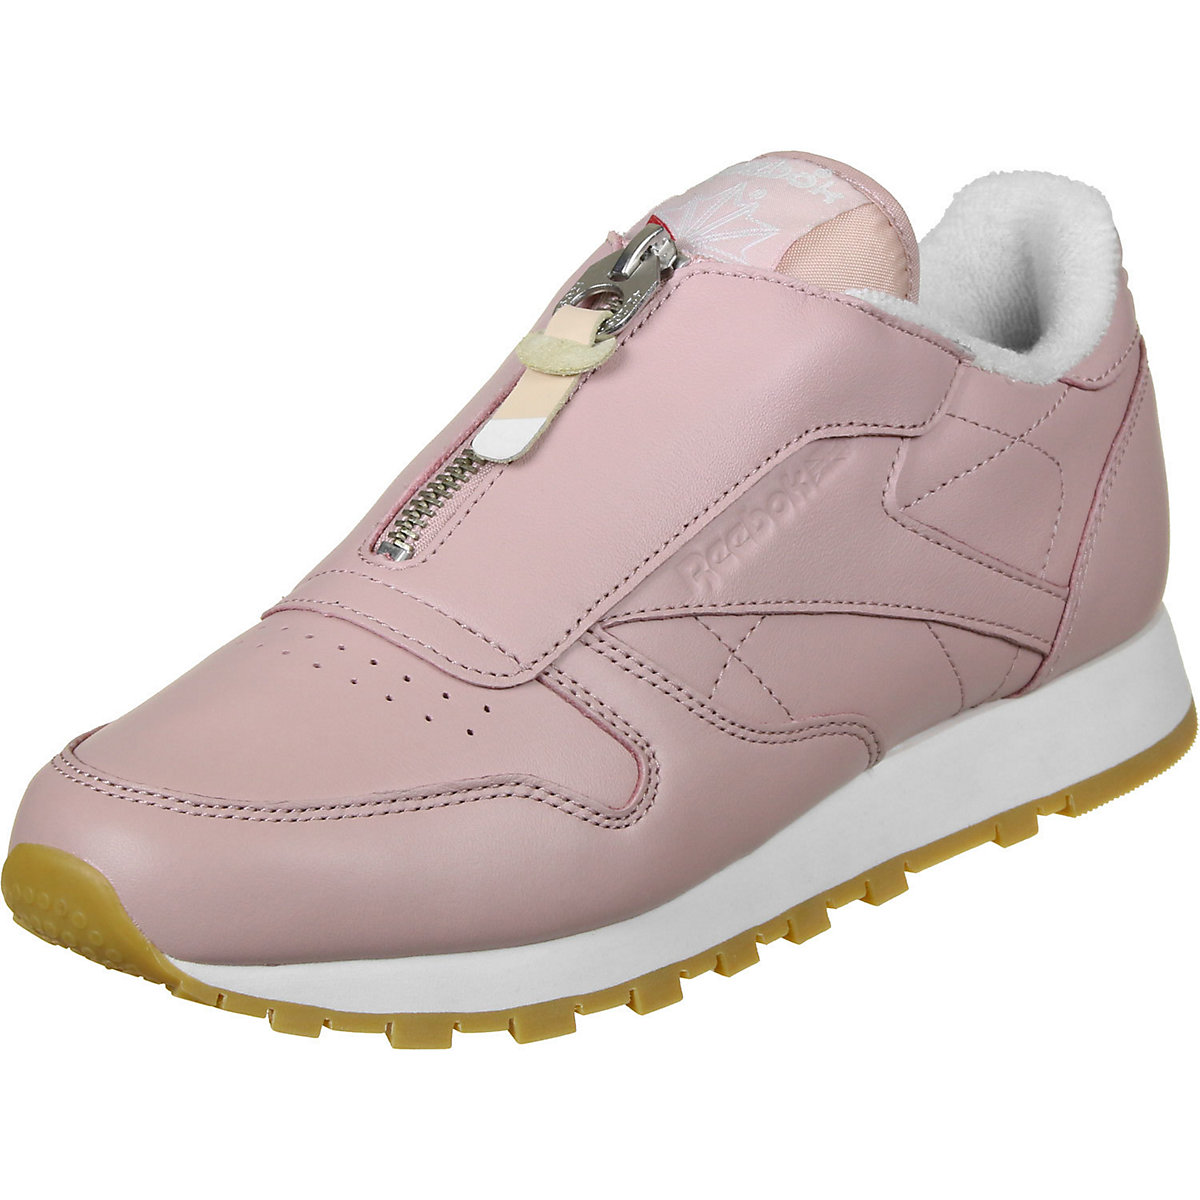 Reebok Reebok Schuhe CL Leather Zip W Sneakers Low pink